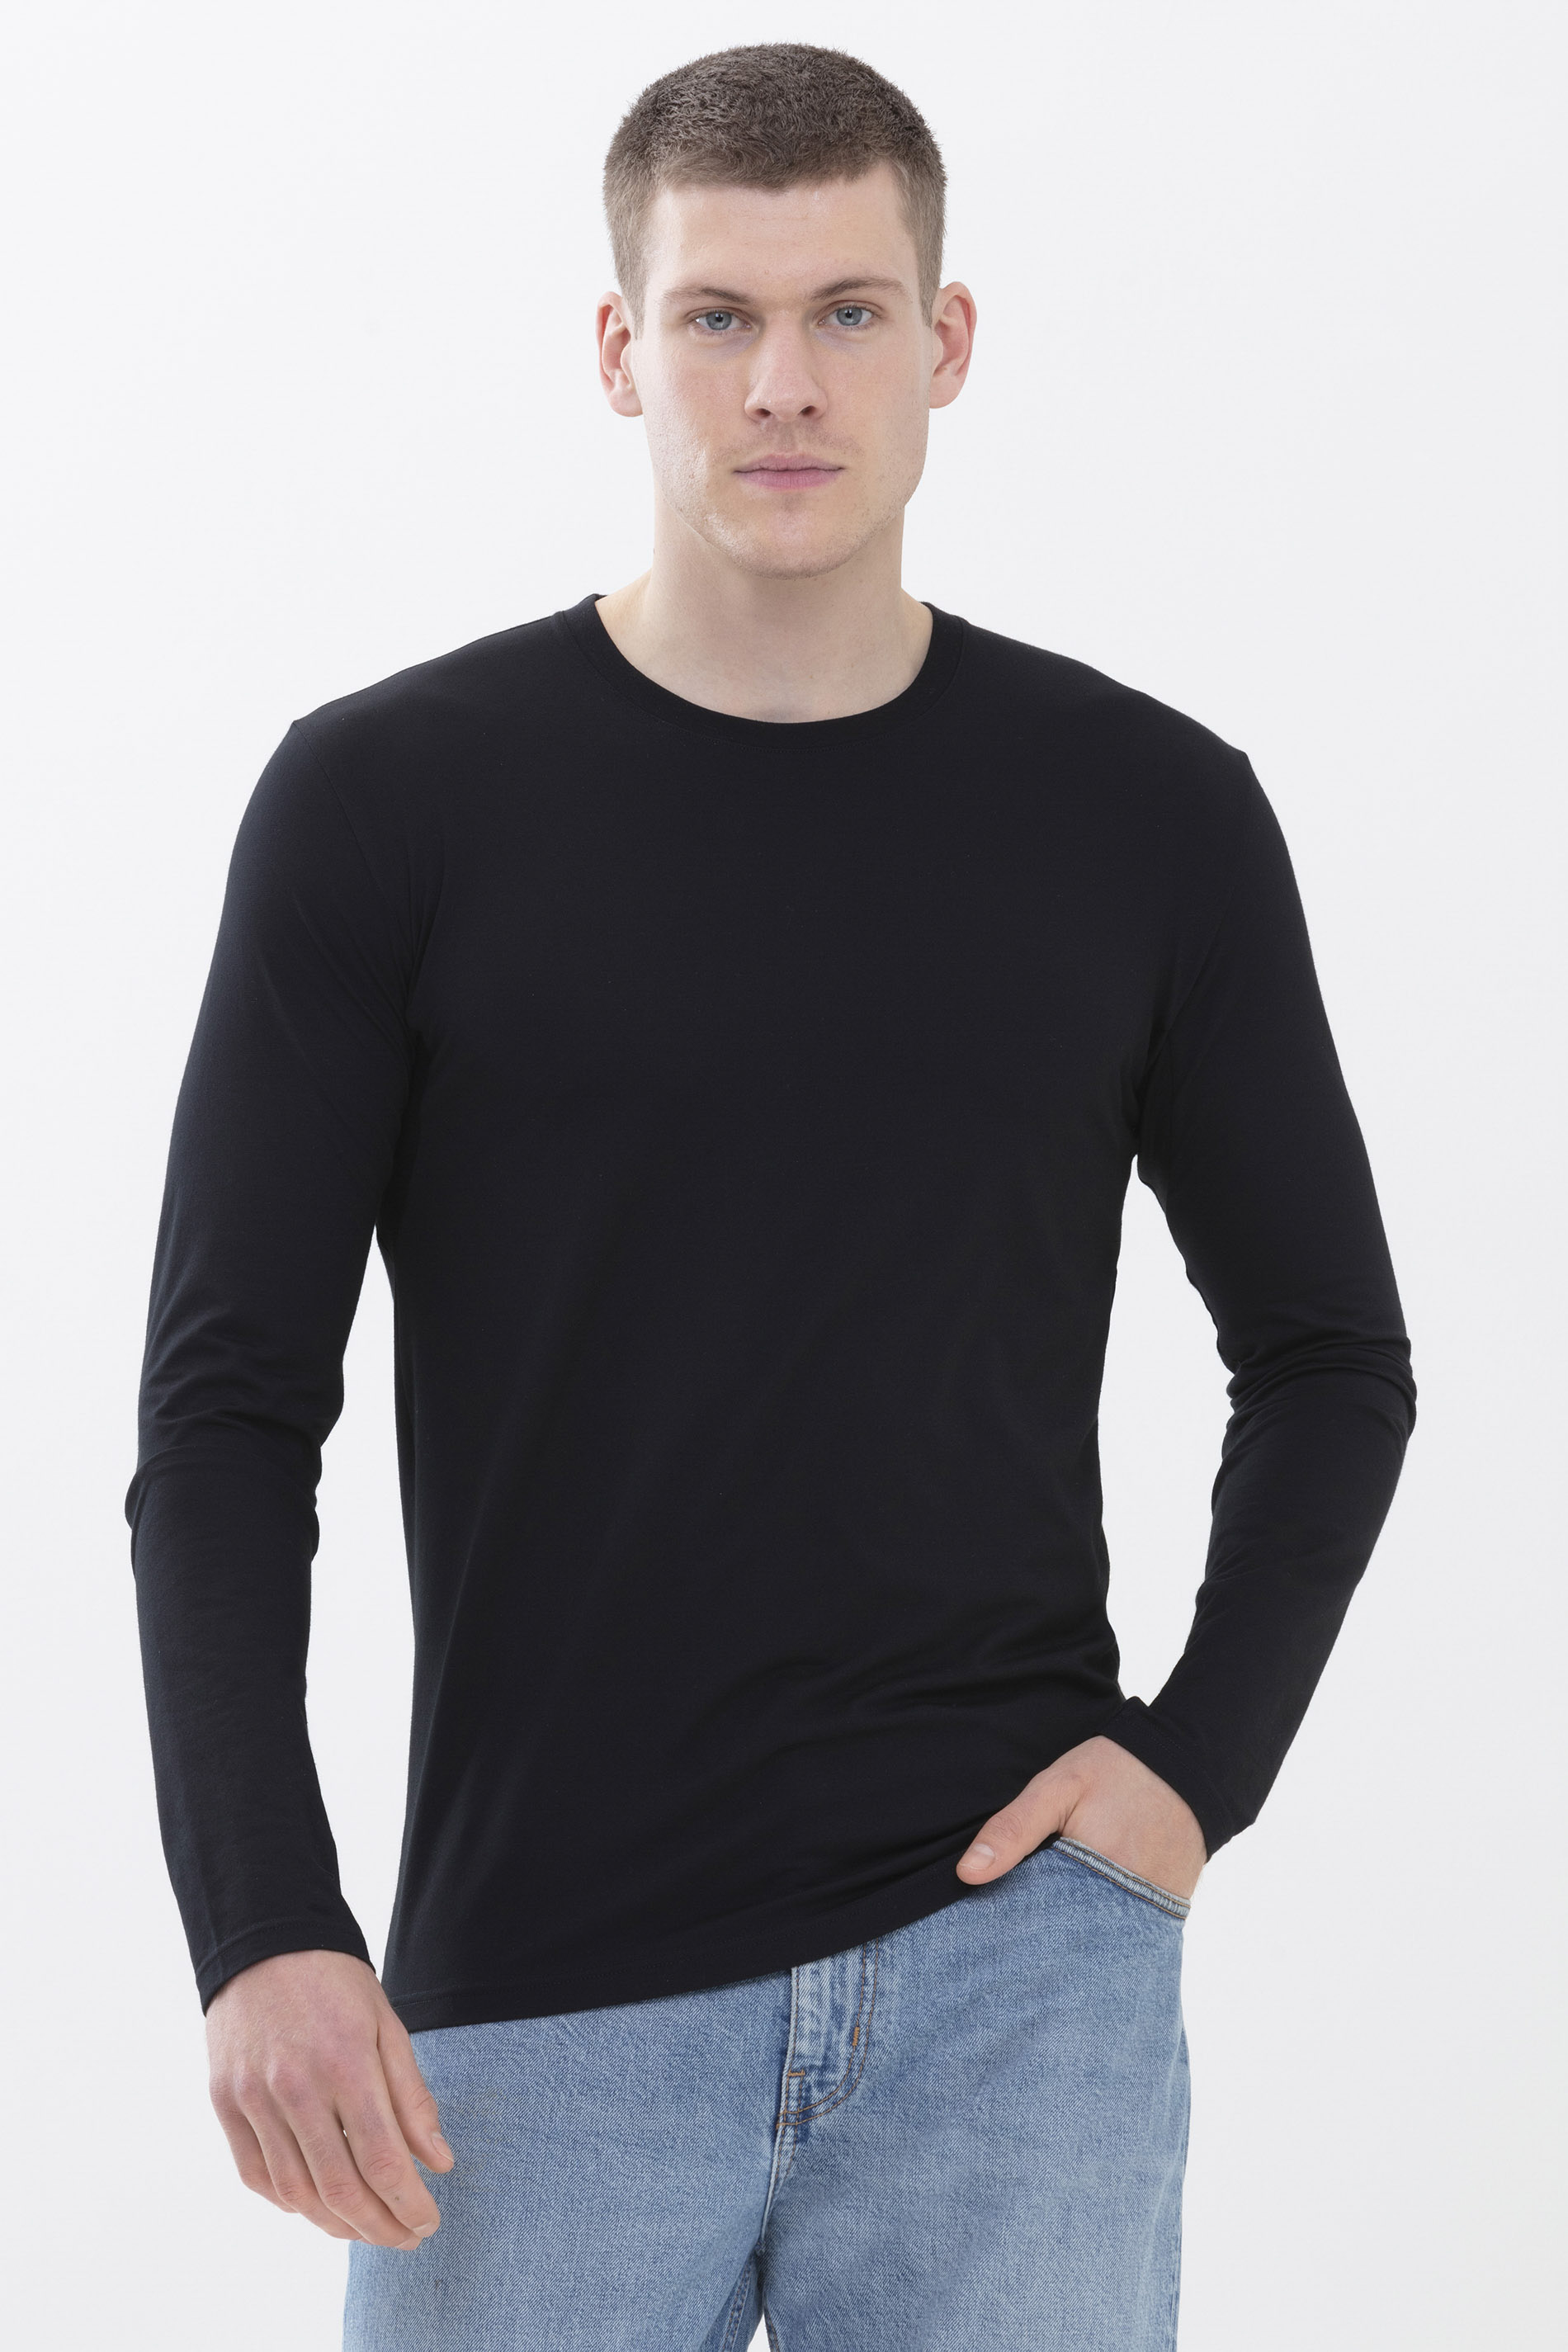 Hybride T-shirt | Lange mouwen Zwart Serie Hybrid T-Shirt Vooraanzicht | mey®